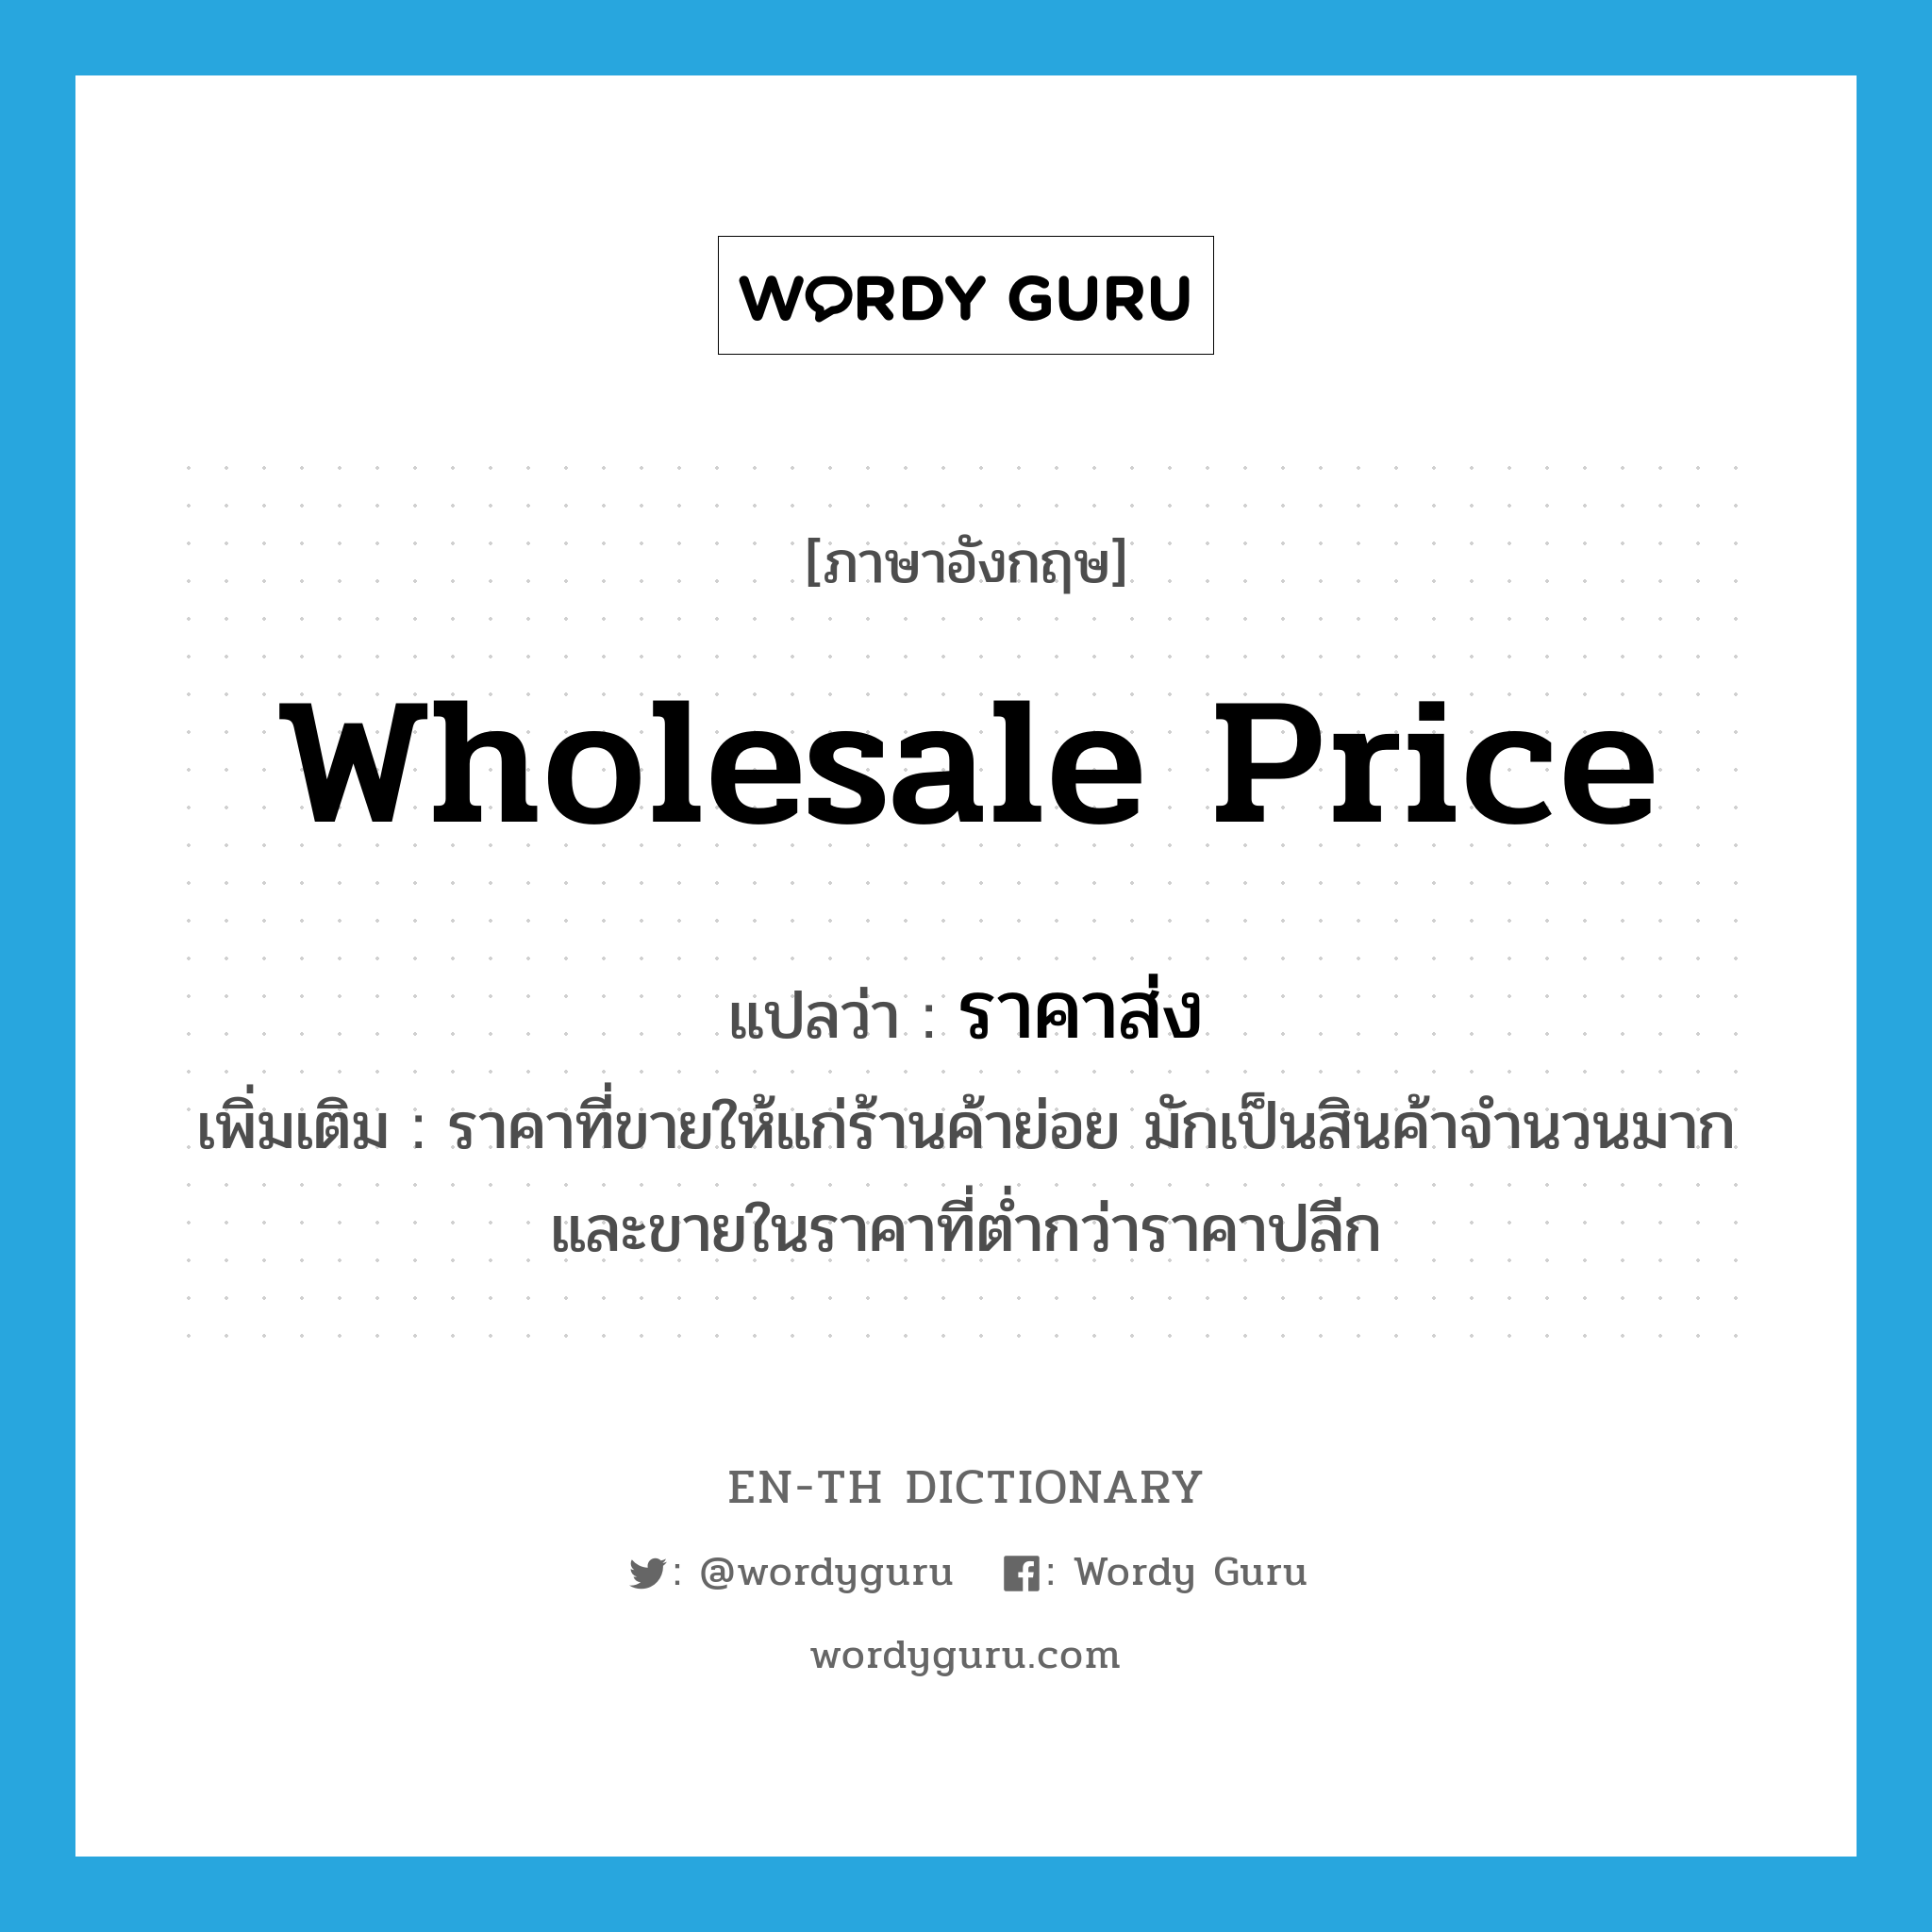 wholesale price แปลว่า?, คำศัพท์ภาษาอังกฤษ wholesale price แปลว่า ราคาส่ง ประเภท N เพิ่มเติม ราคาที่ขายให้แก่ร้านค้าย่อย มักเป็นสินค้าจำนวนมาก และขายในราคาที่ต่ำกว่าราคาปลีก หมวด N